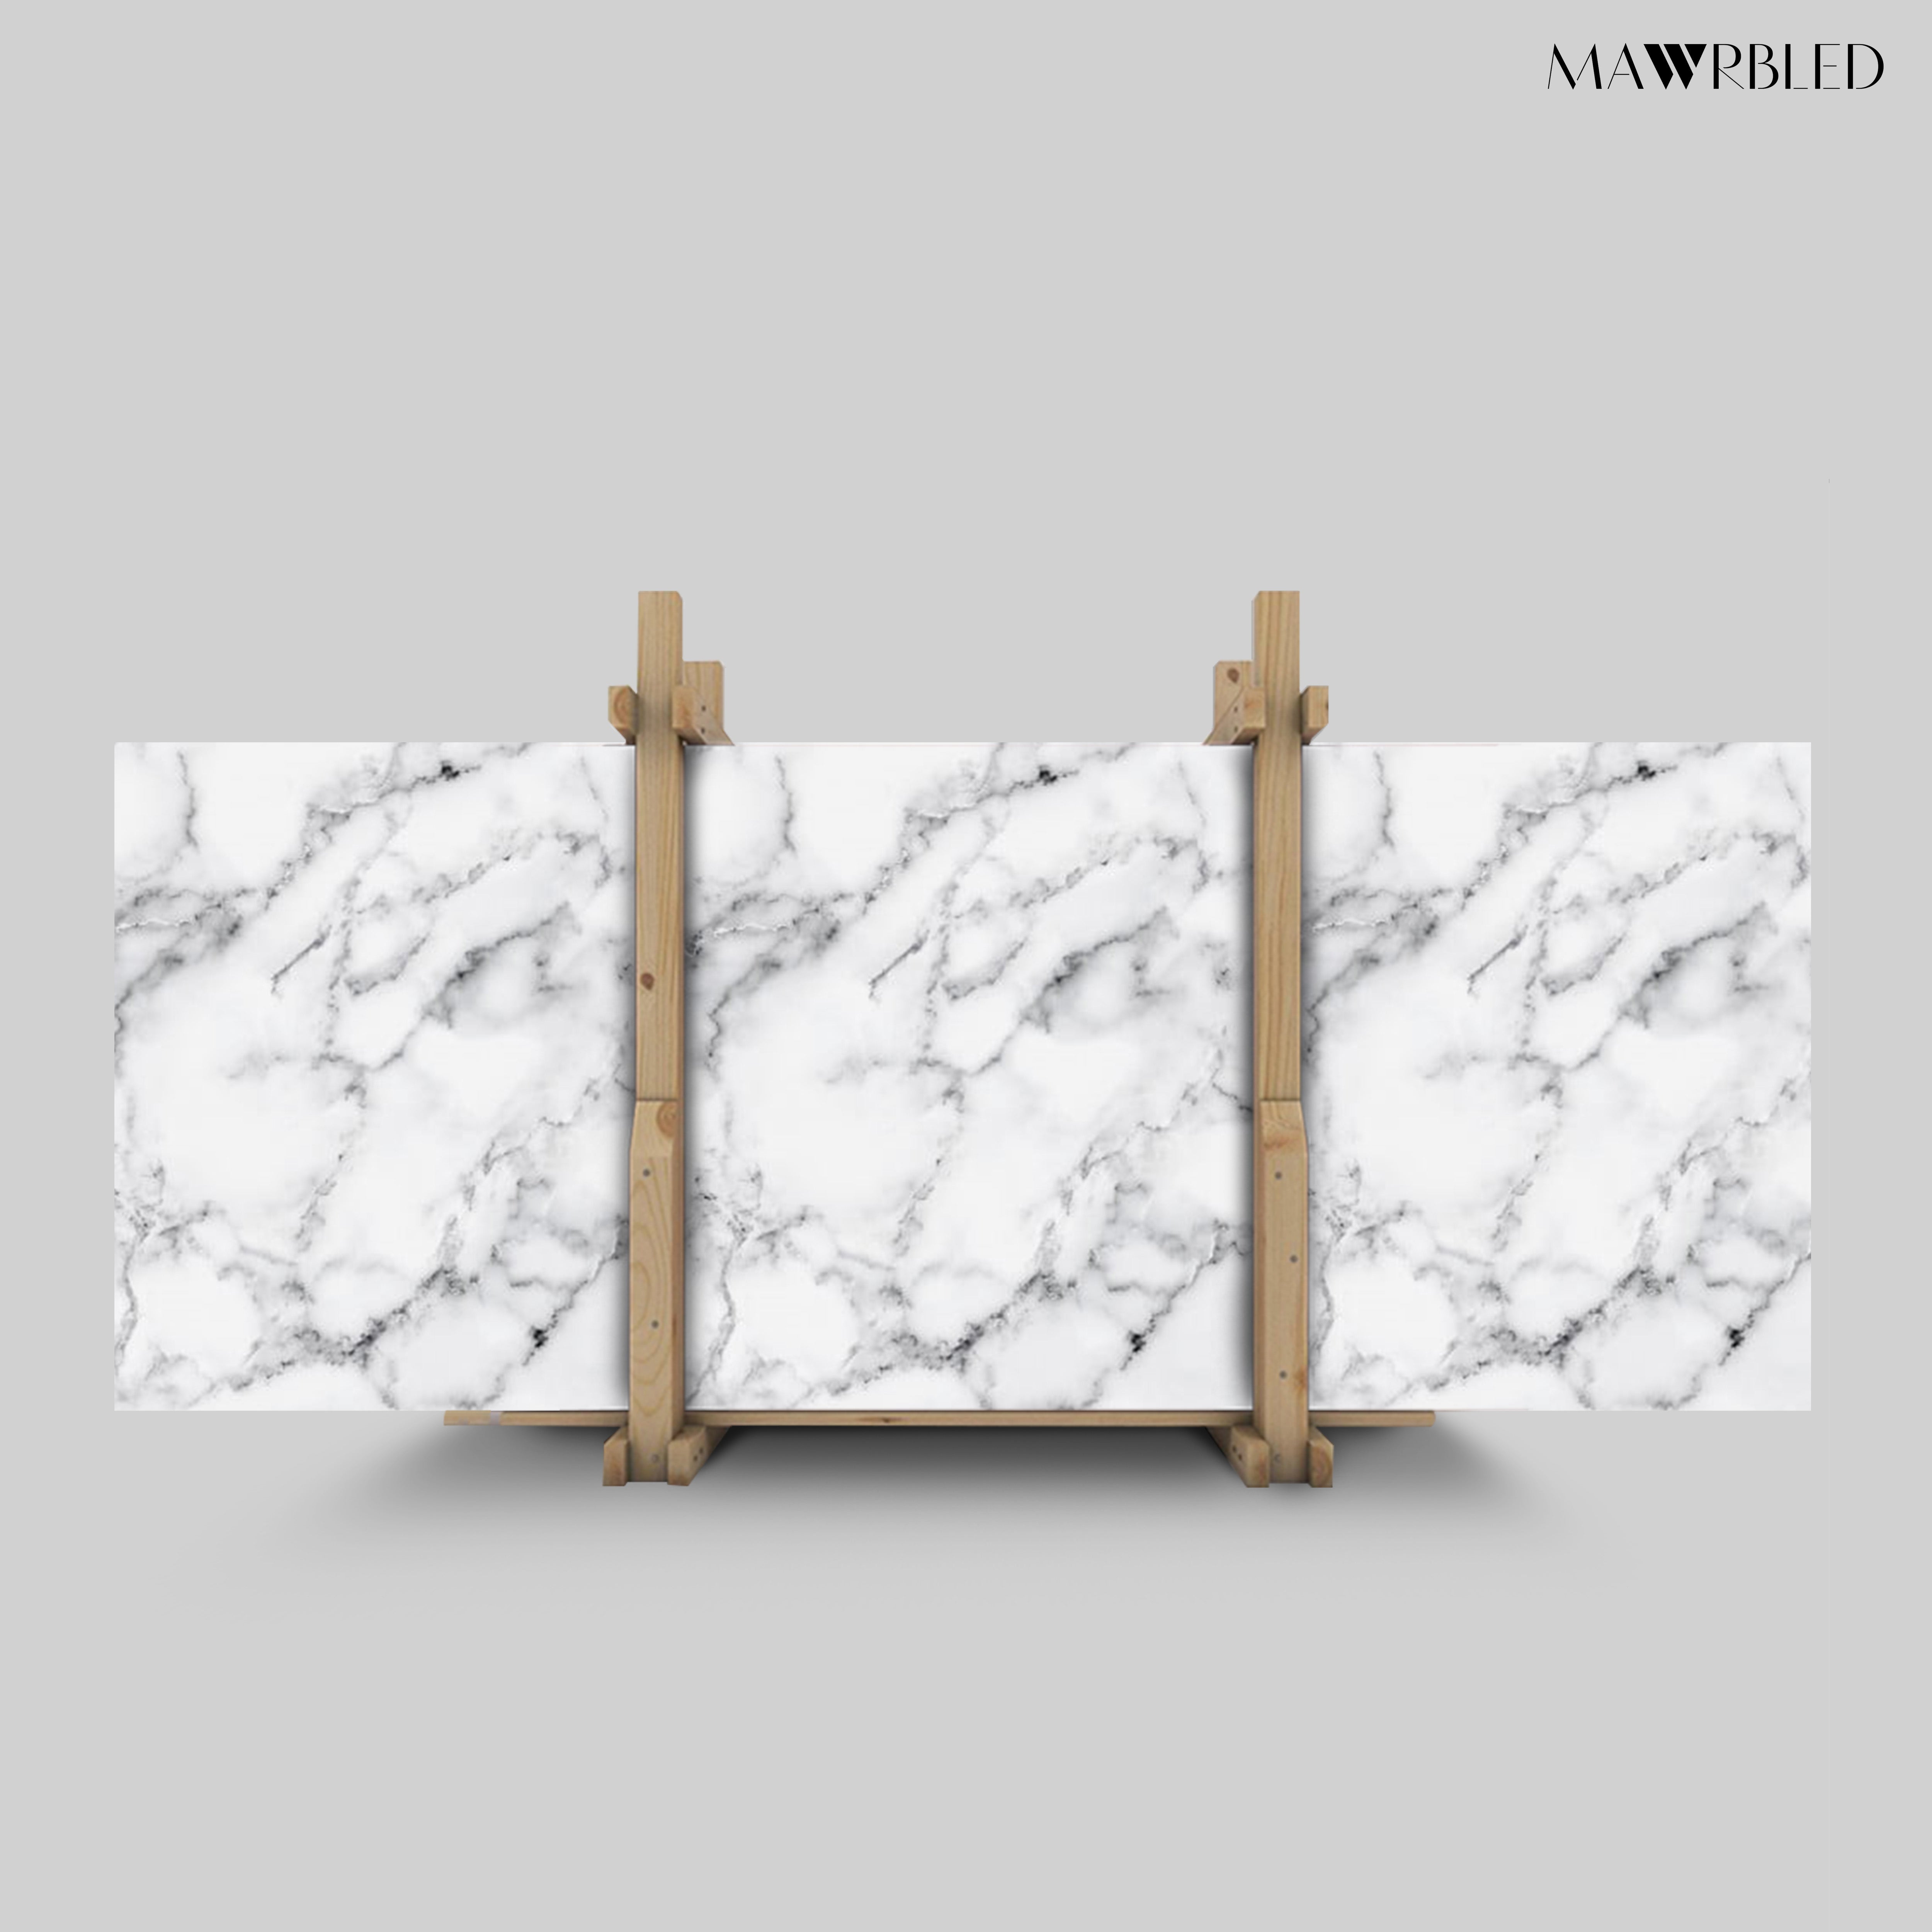 White Carrara Granite Countertops